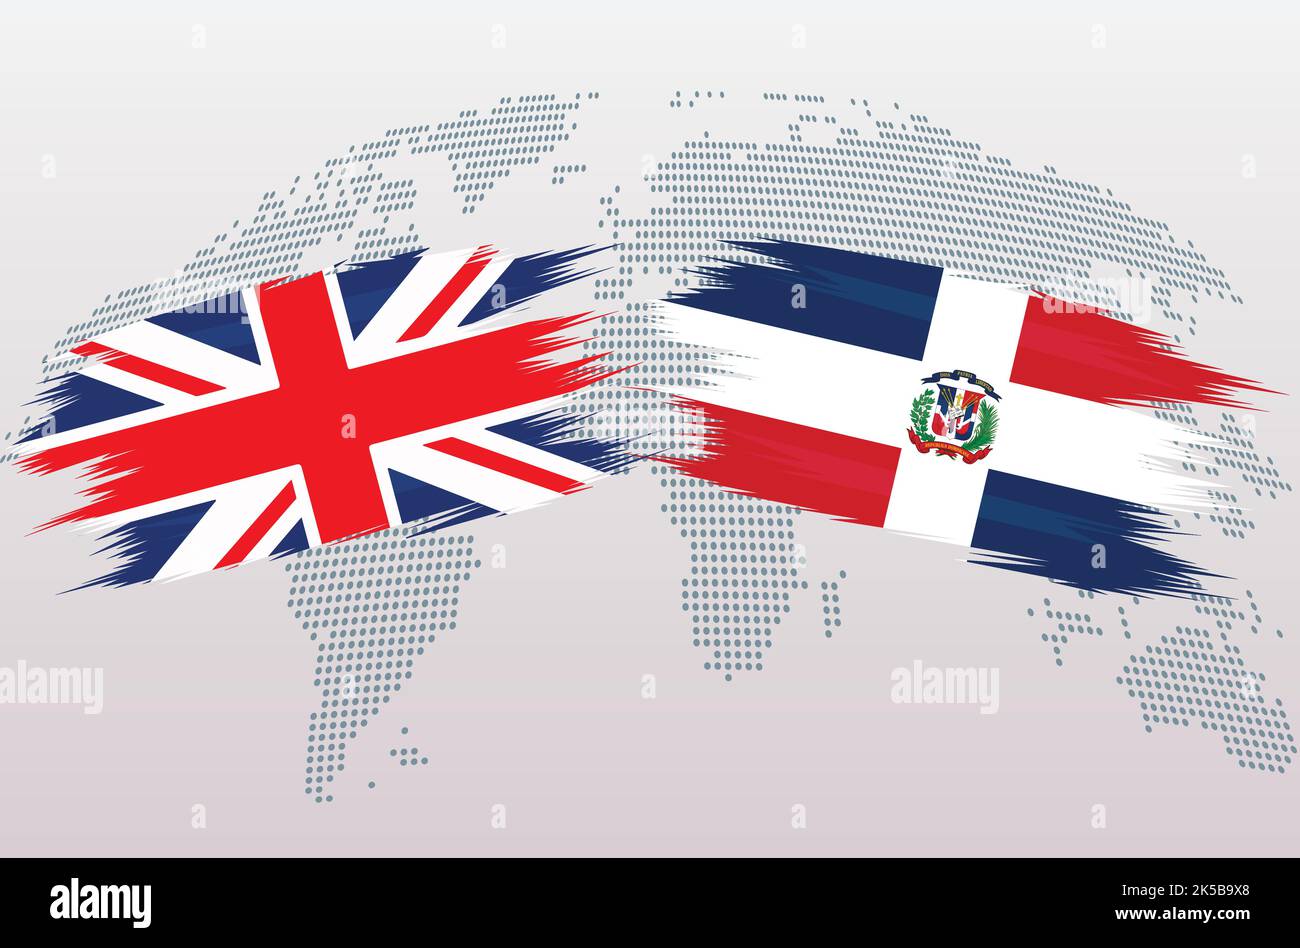 Bandiere britanniche e della Repubblica Dominicana. Bandiere del Regno Unito e dominicane, isolate su sfondo grigio della mappa del mondo. Illustrazione vettoriale. Illustrazione Vettoriale